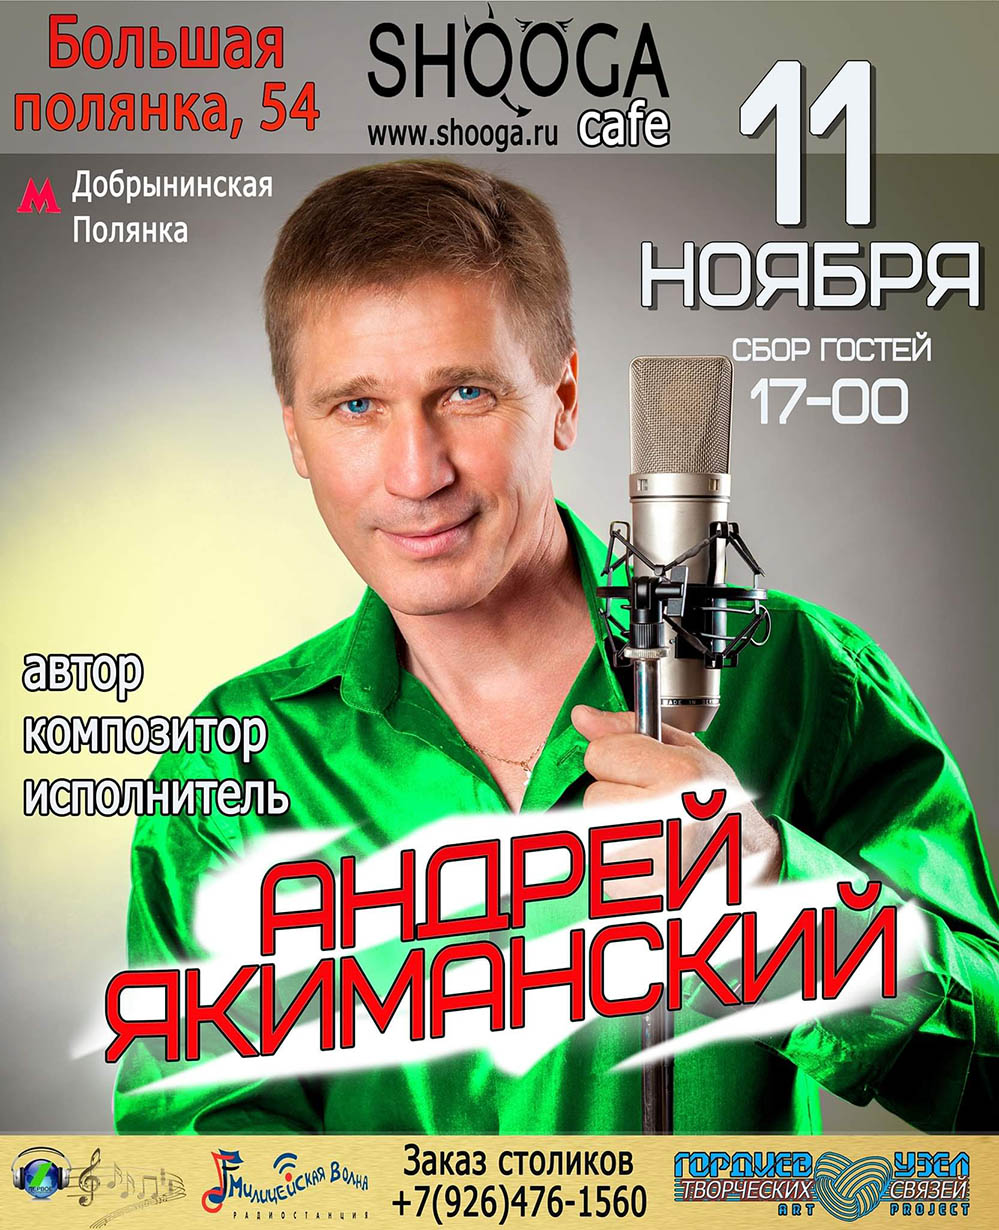 11 ноября — поёт Андрей Якиманский